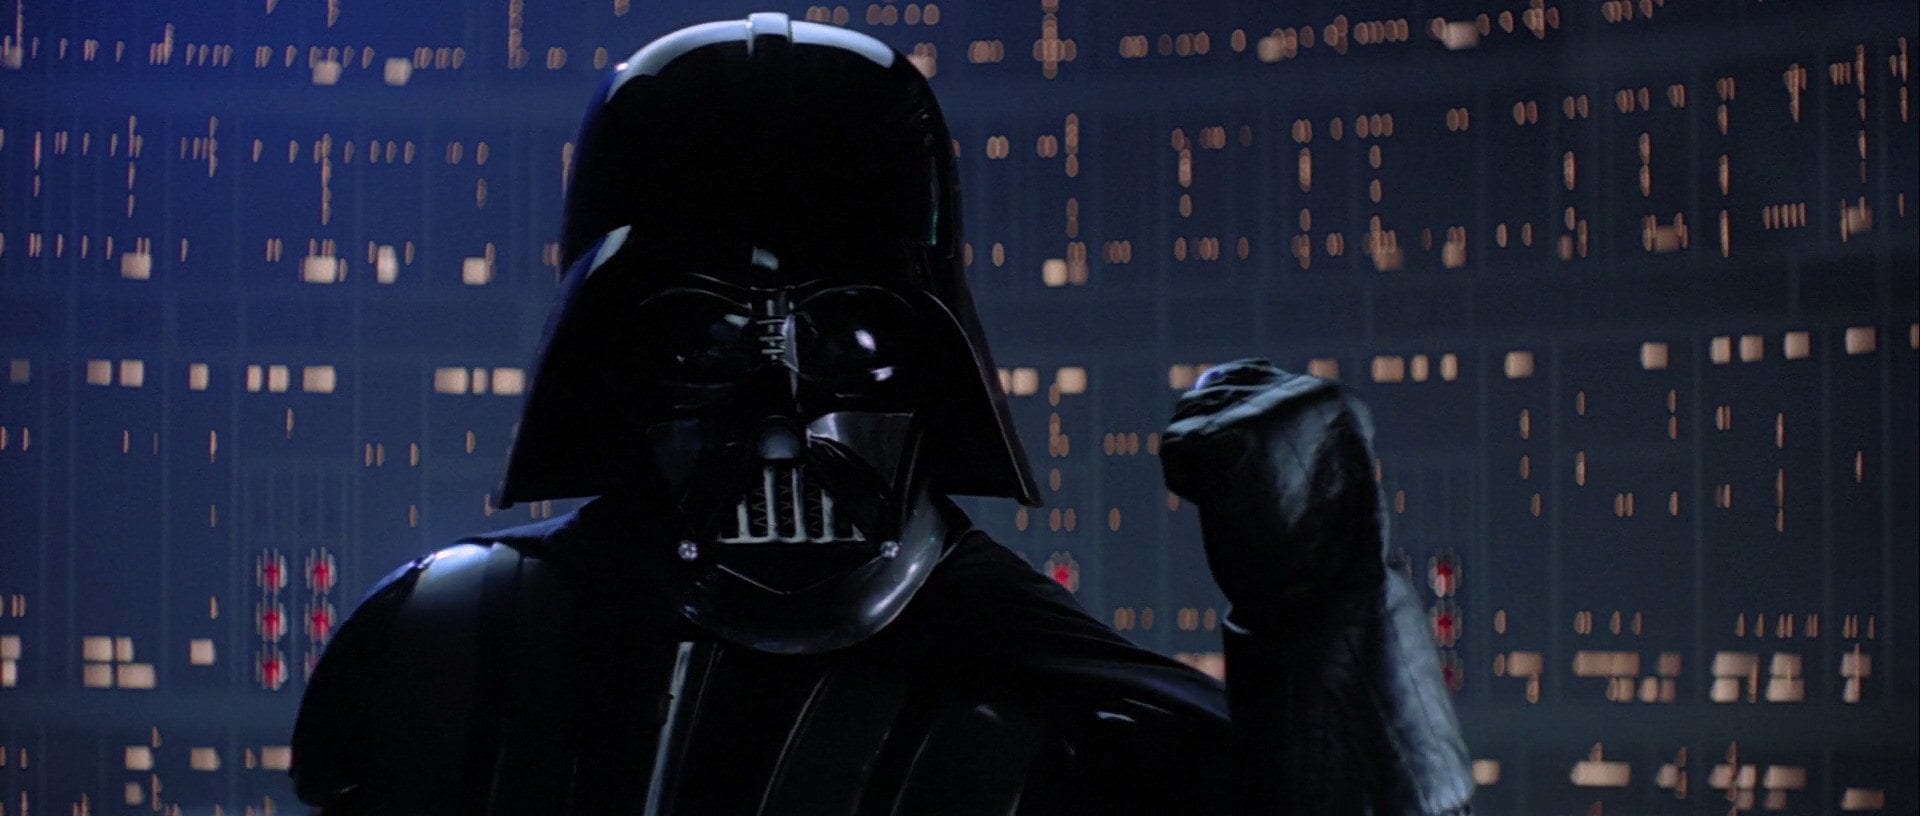 Vader fist- Star Wars politics